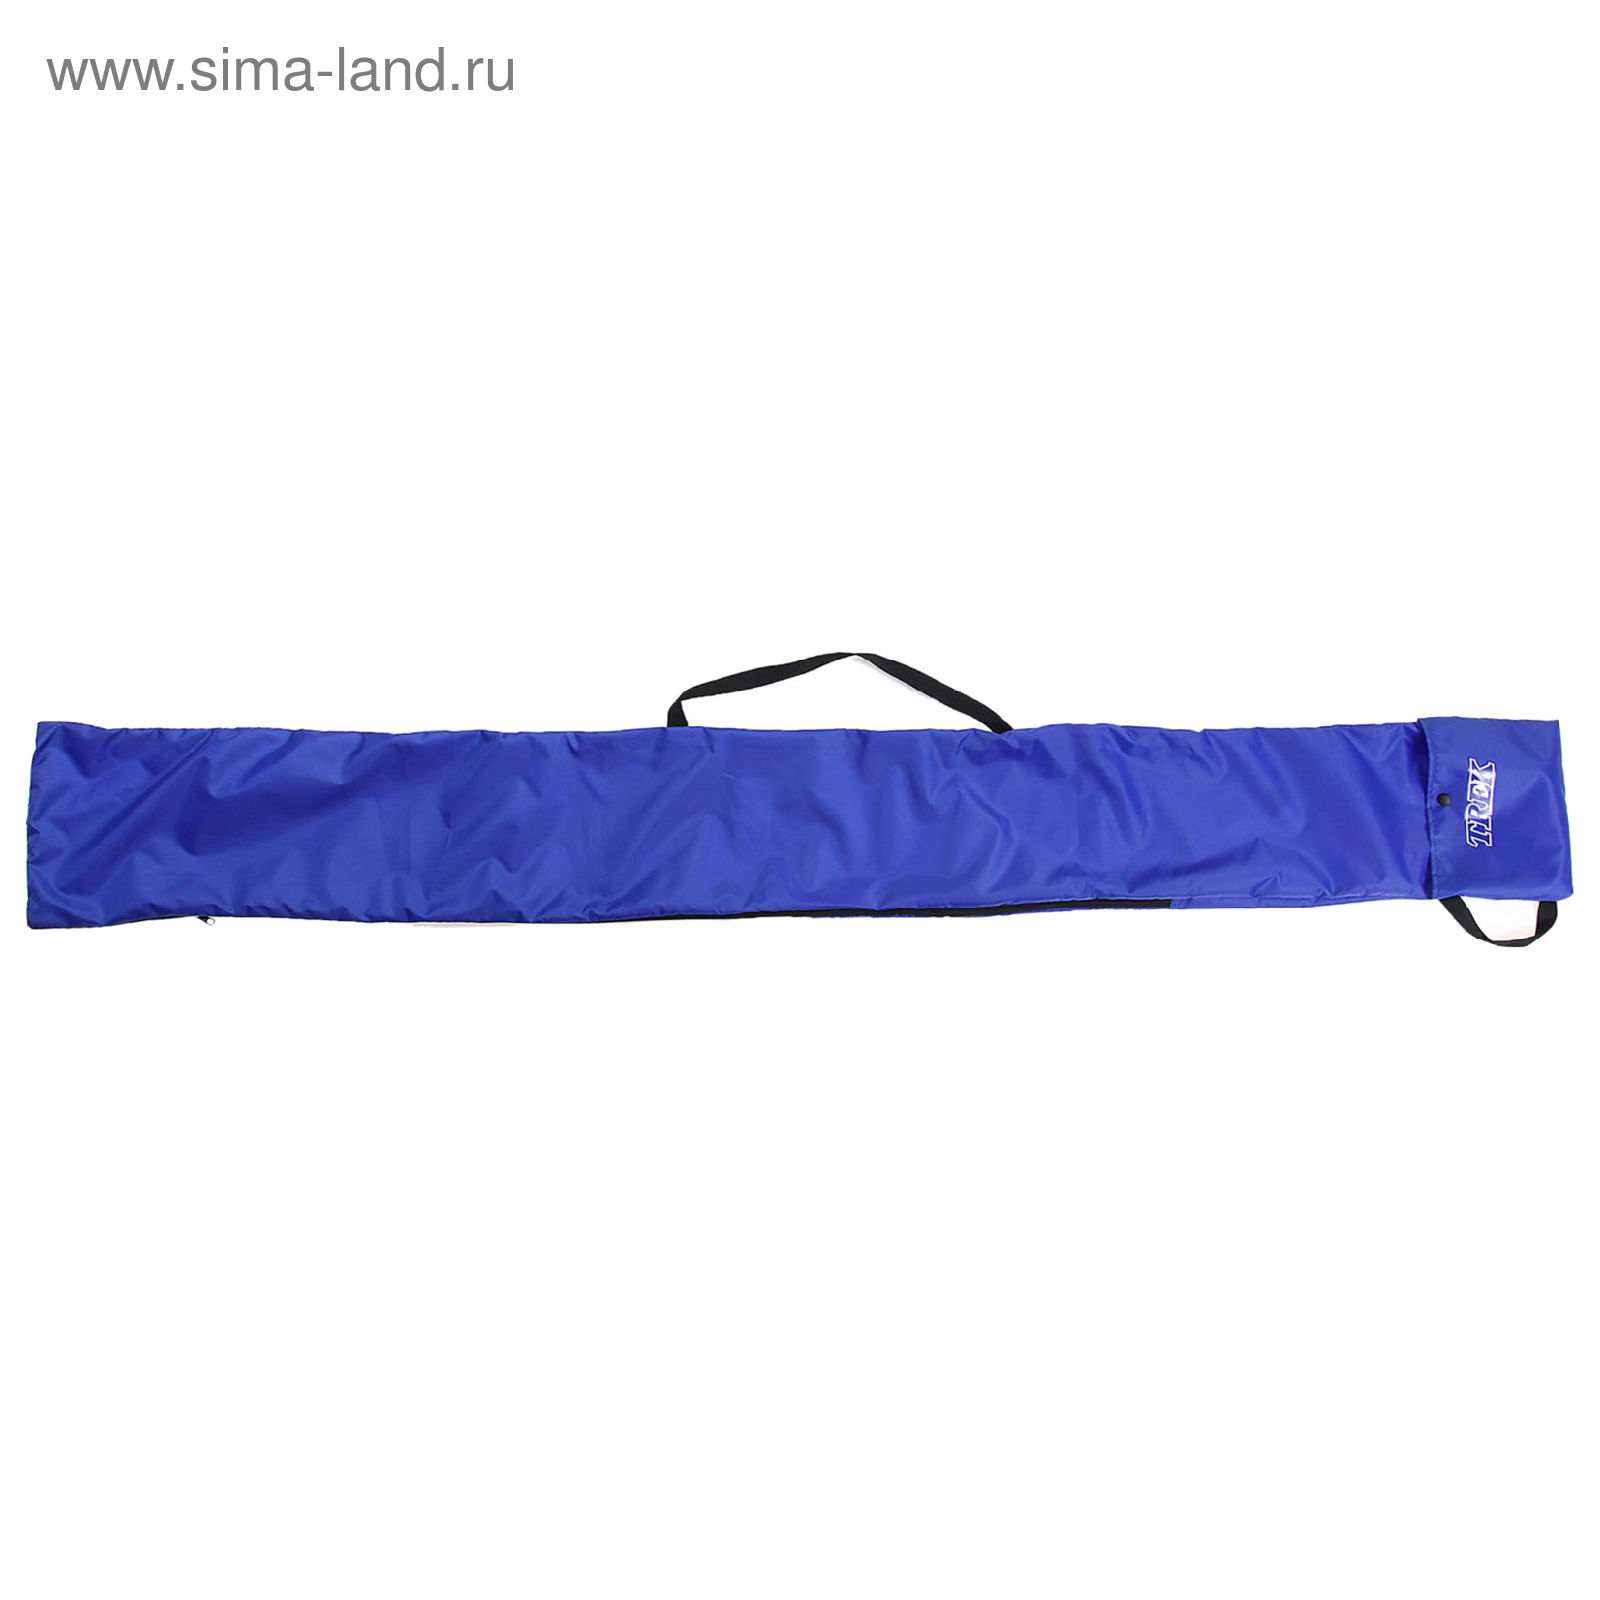 Чехол-сумка для беговых лыж 210см"